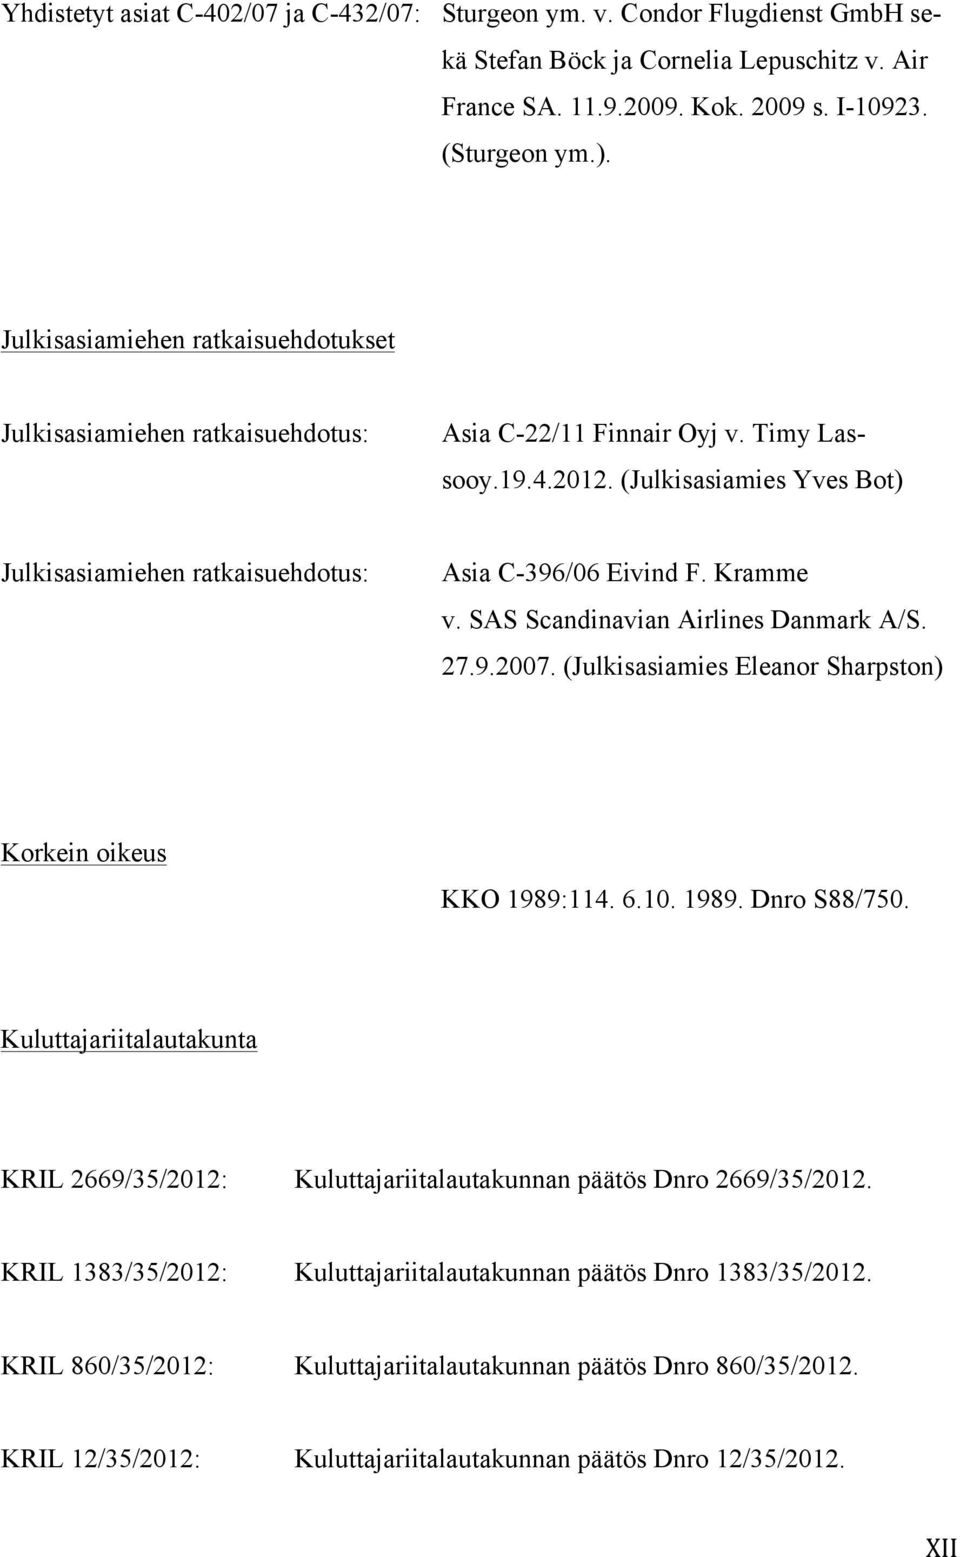 (Julkisasiamies Yves Bot) Julkisasiamiehen ratkaisuehdotus: Asia C-396/06 Eivind F. Kramme v. SAS Scandinavian Airlines Danmark A/S. 27.9.2007.